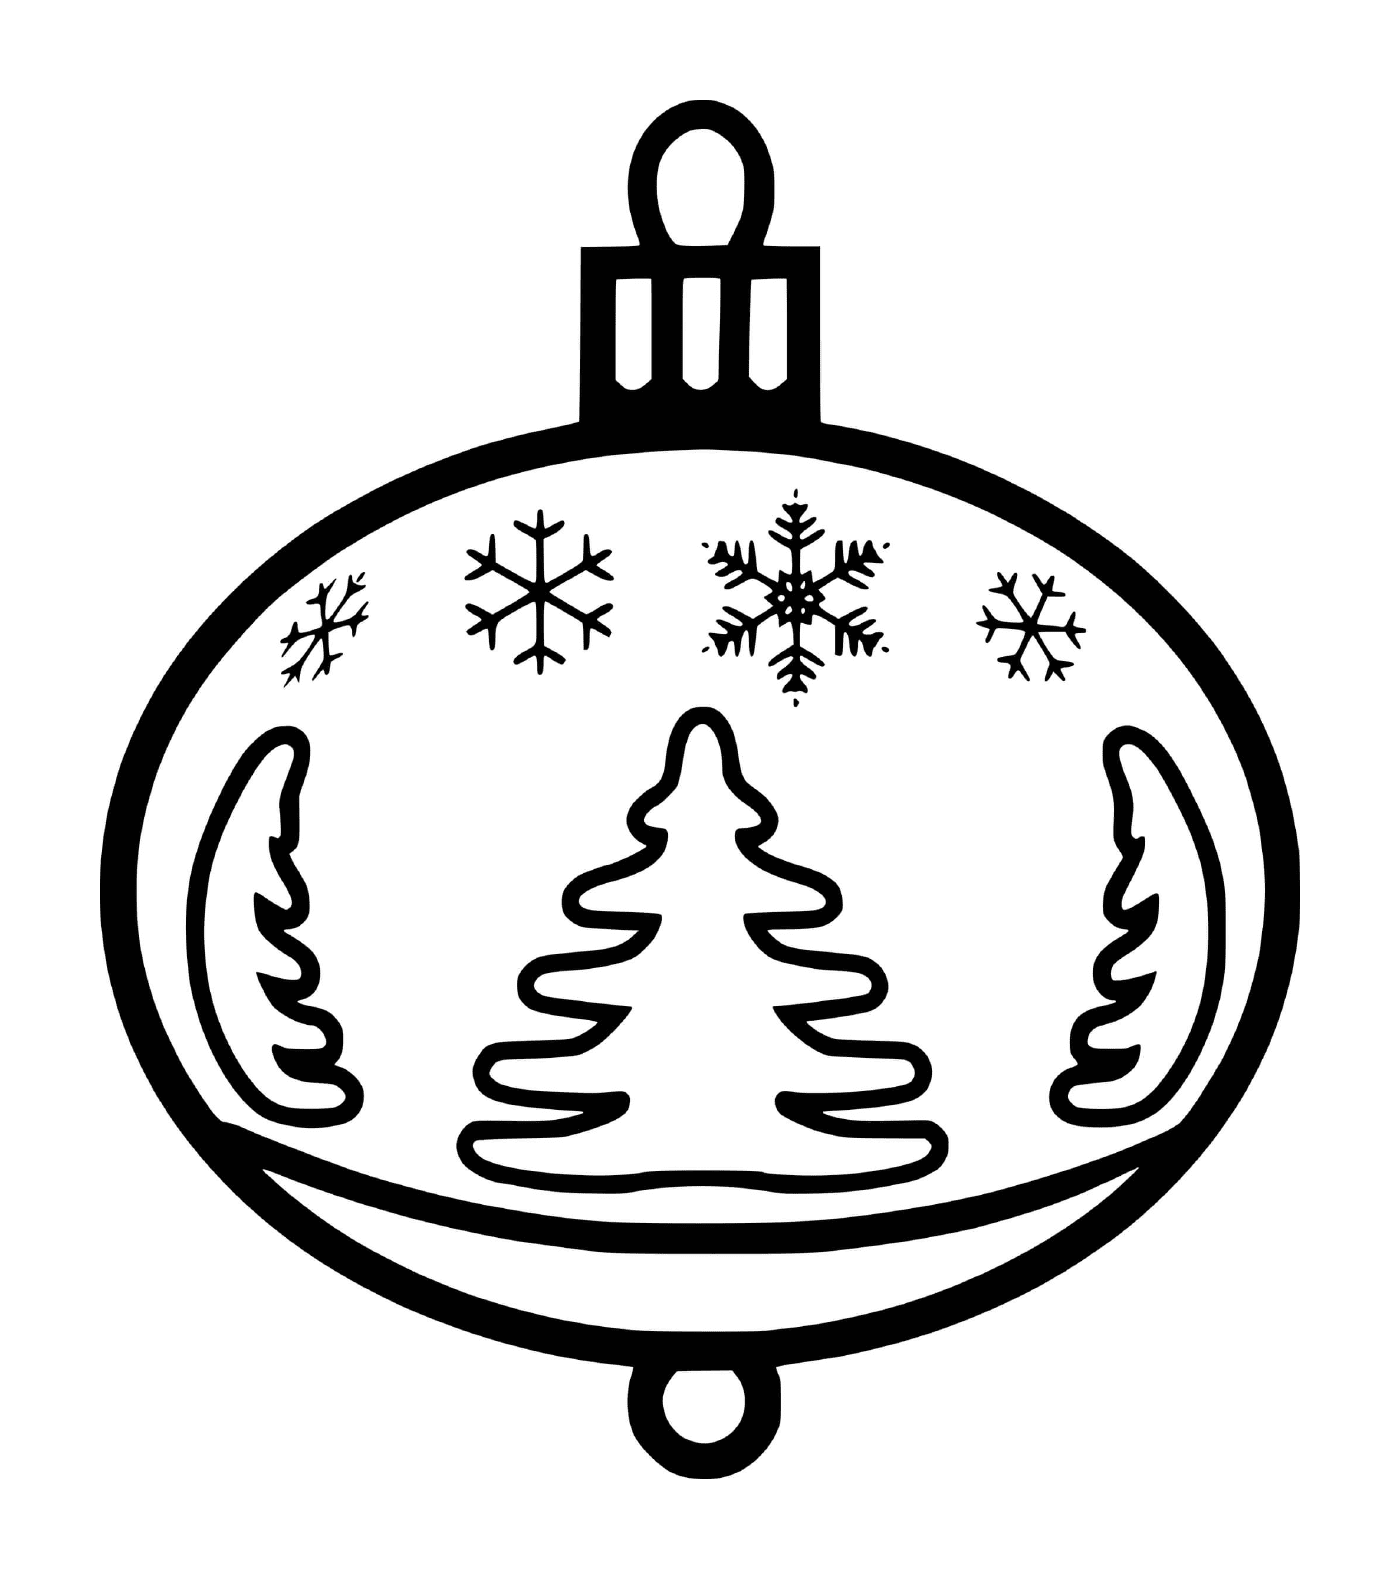  Ein Weihnachtsball mit Schneeflocken und Tannen 